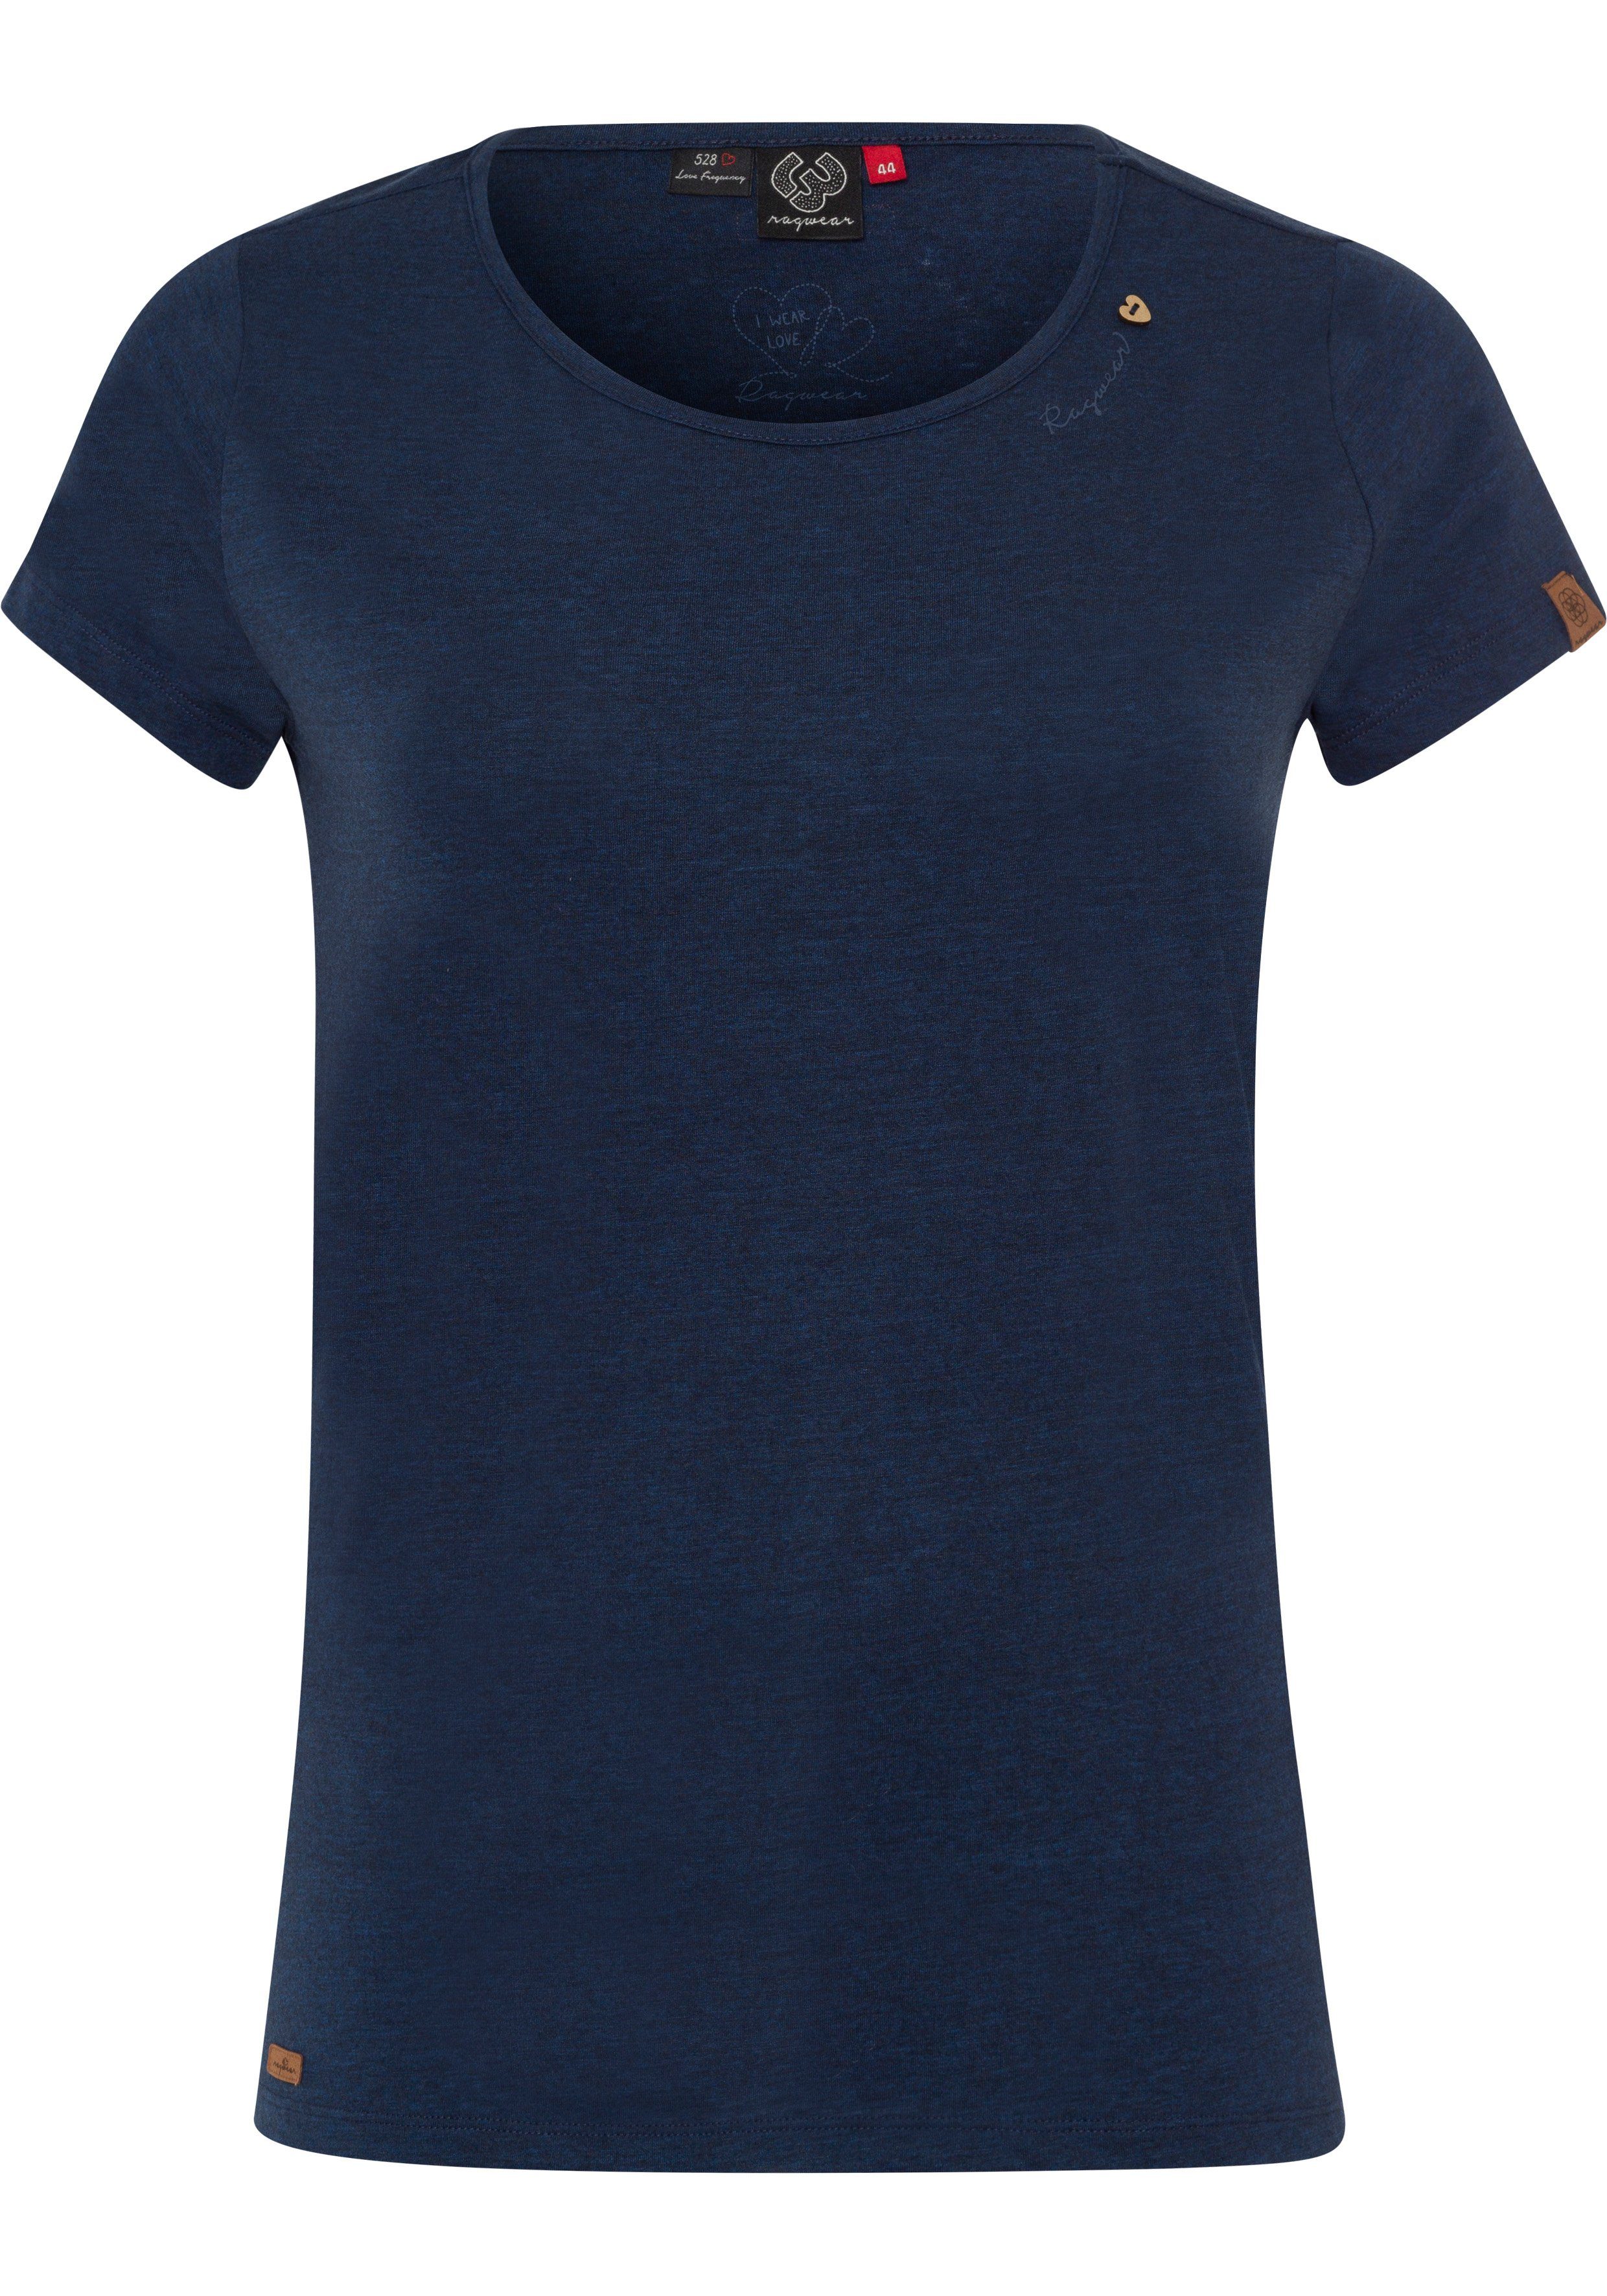 T-Shirt Zierknopf-Applikation natürlicher Logoschriftzug PLUS A in mit und MINT Holzoptik 2028 navy Ragwear Plus